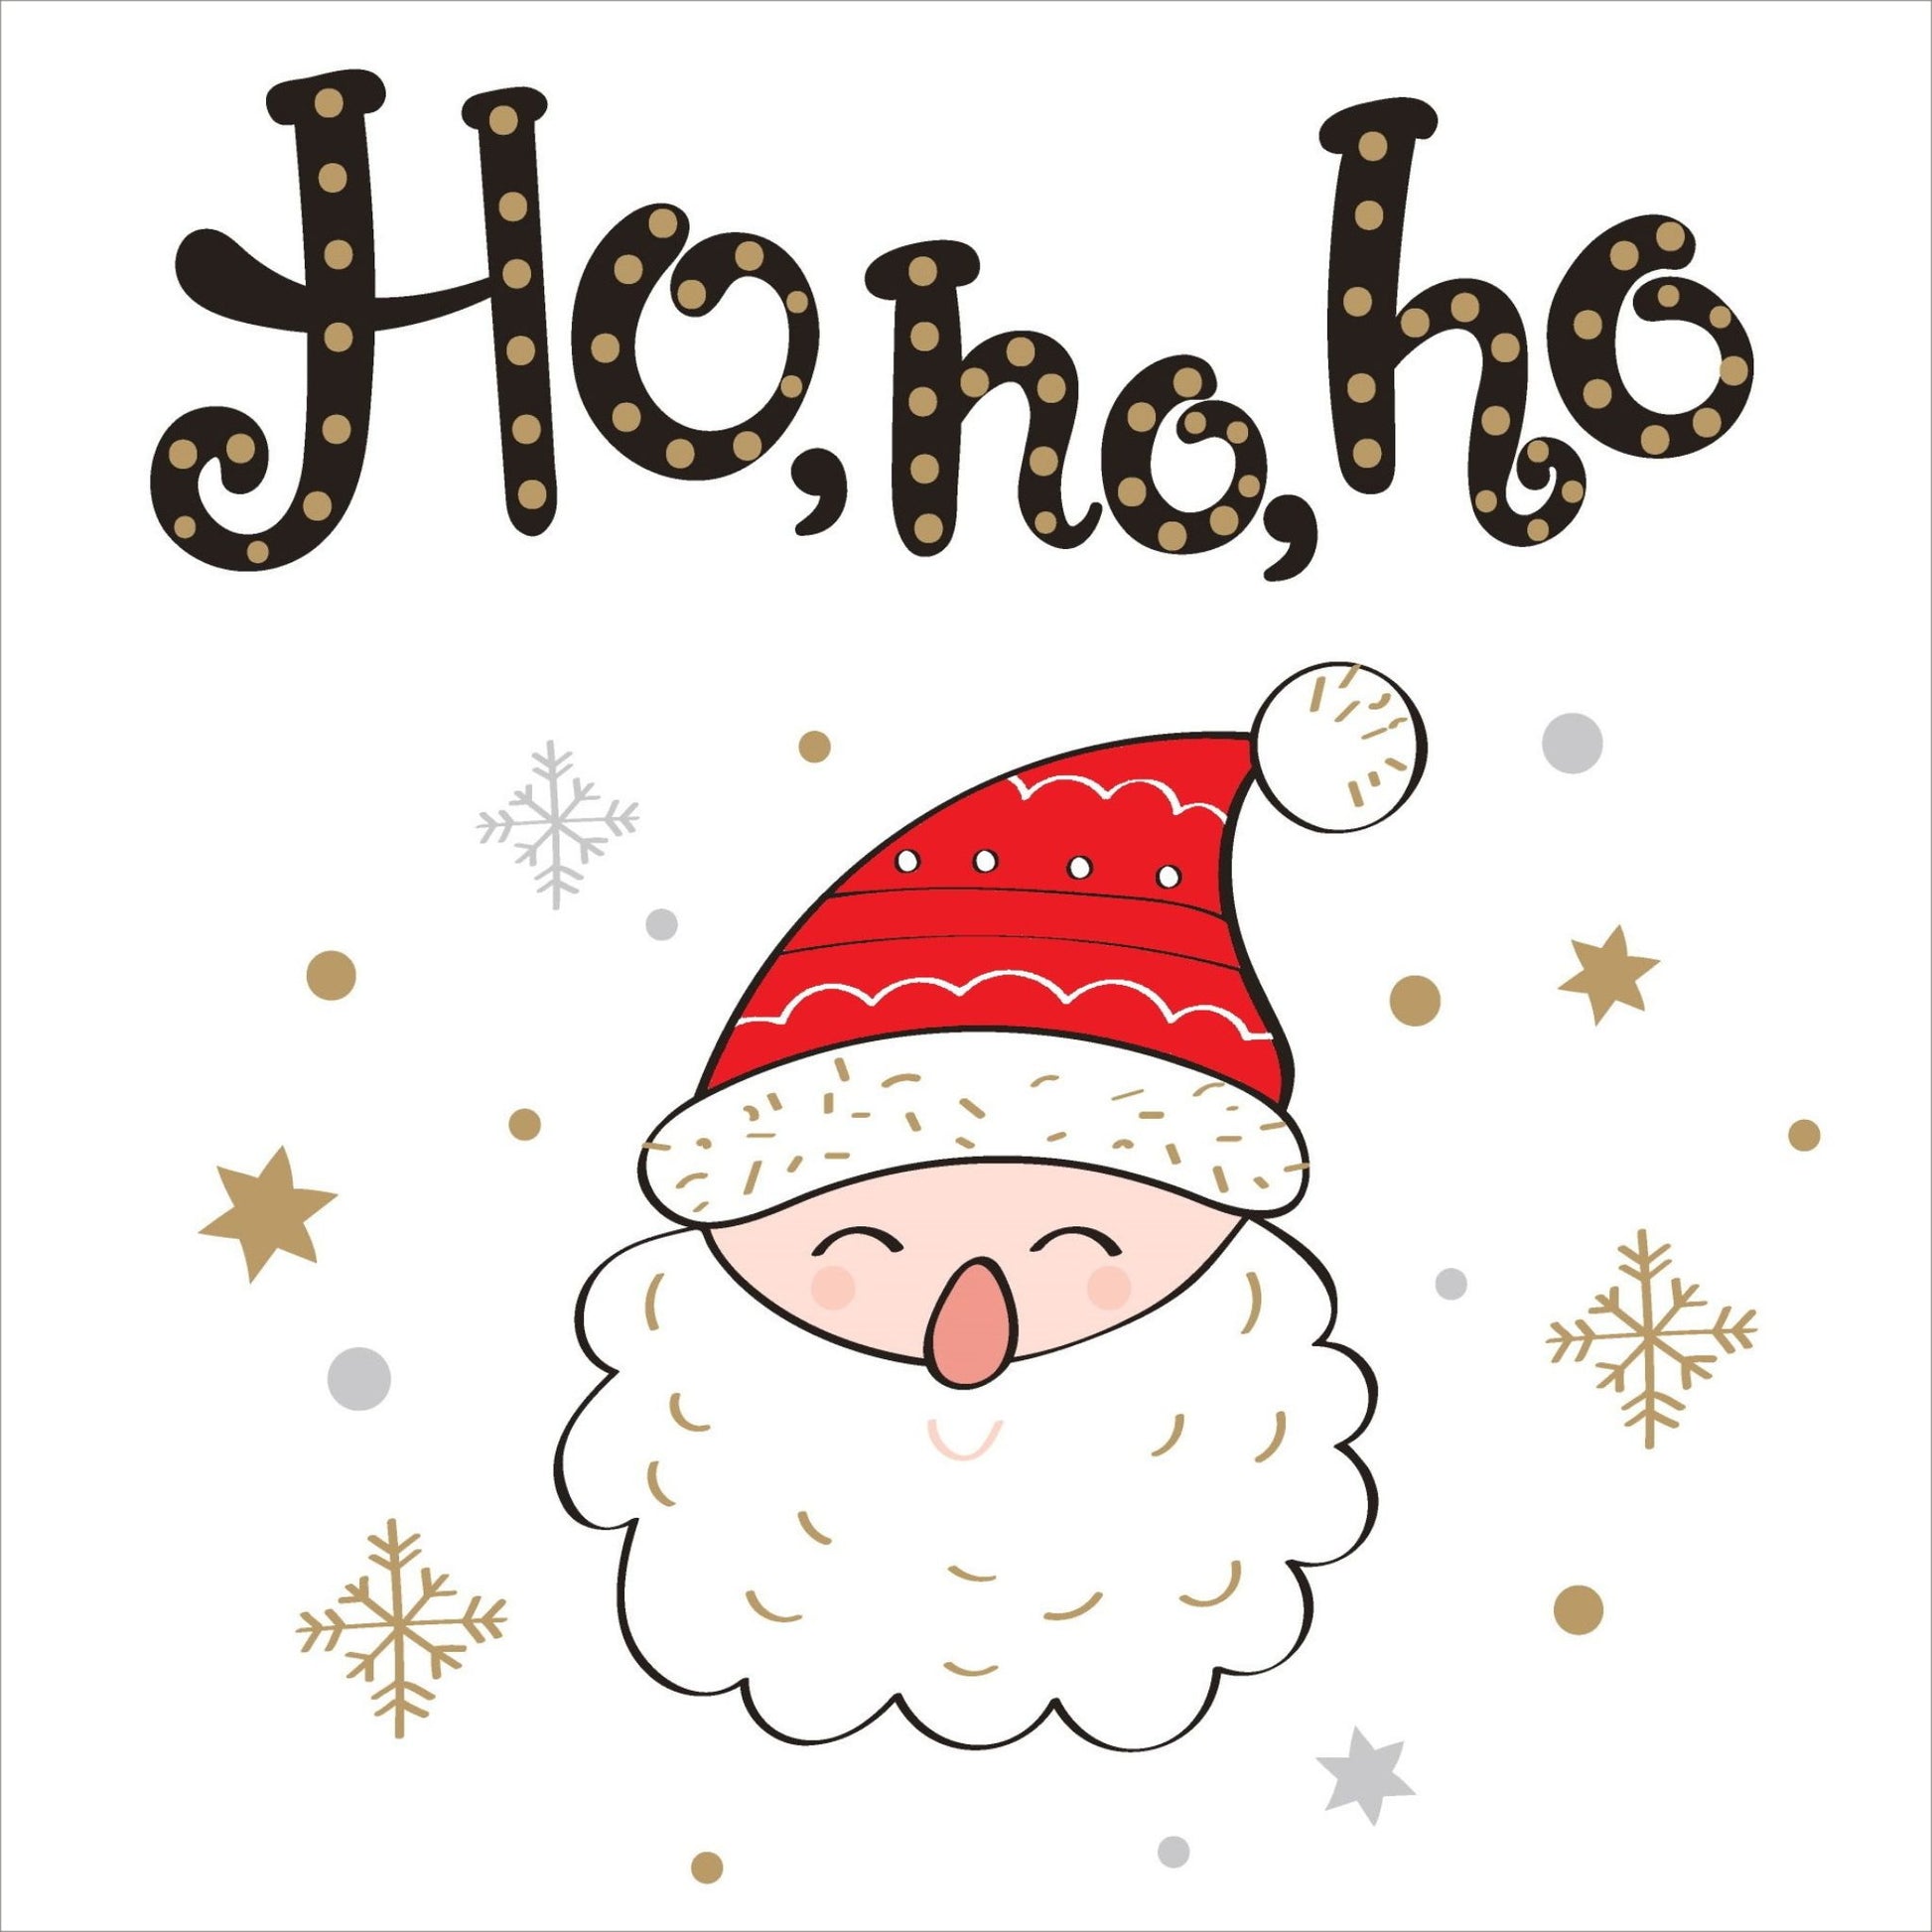 Søte julekort i håndtegnet cartoon. 10 pk. Fargemyanser i rød, grå, sort, hvit og gull.  Motiv av en blid nisse med rød lue. Tekst på kort "ho, ho, ho"